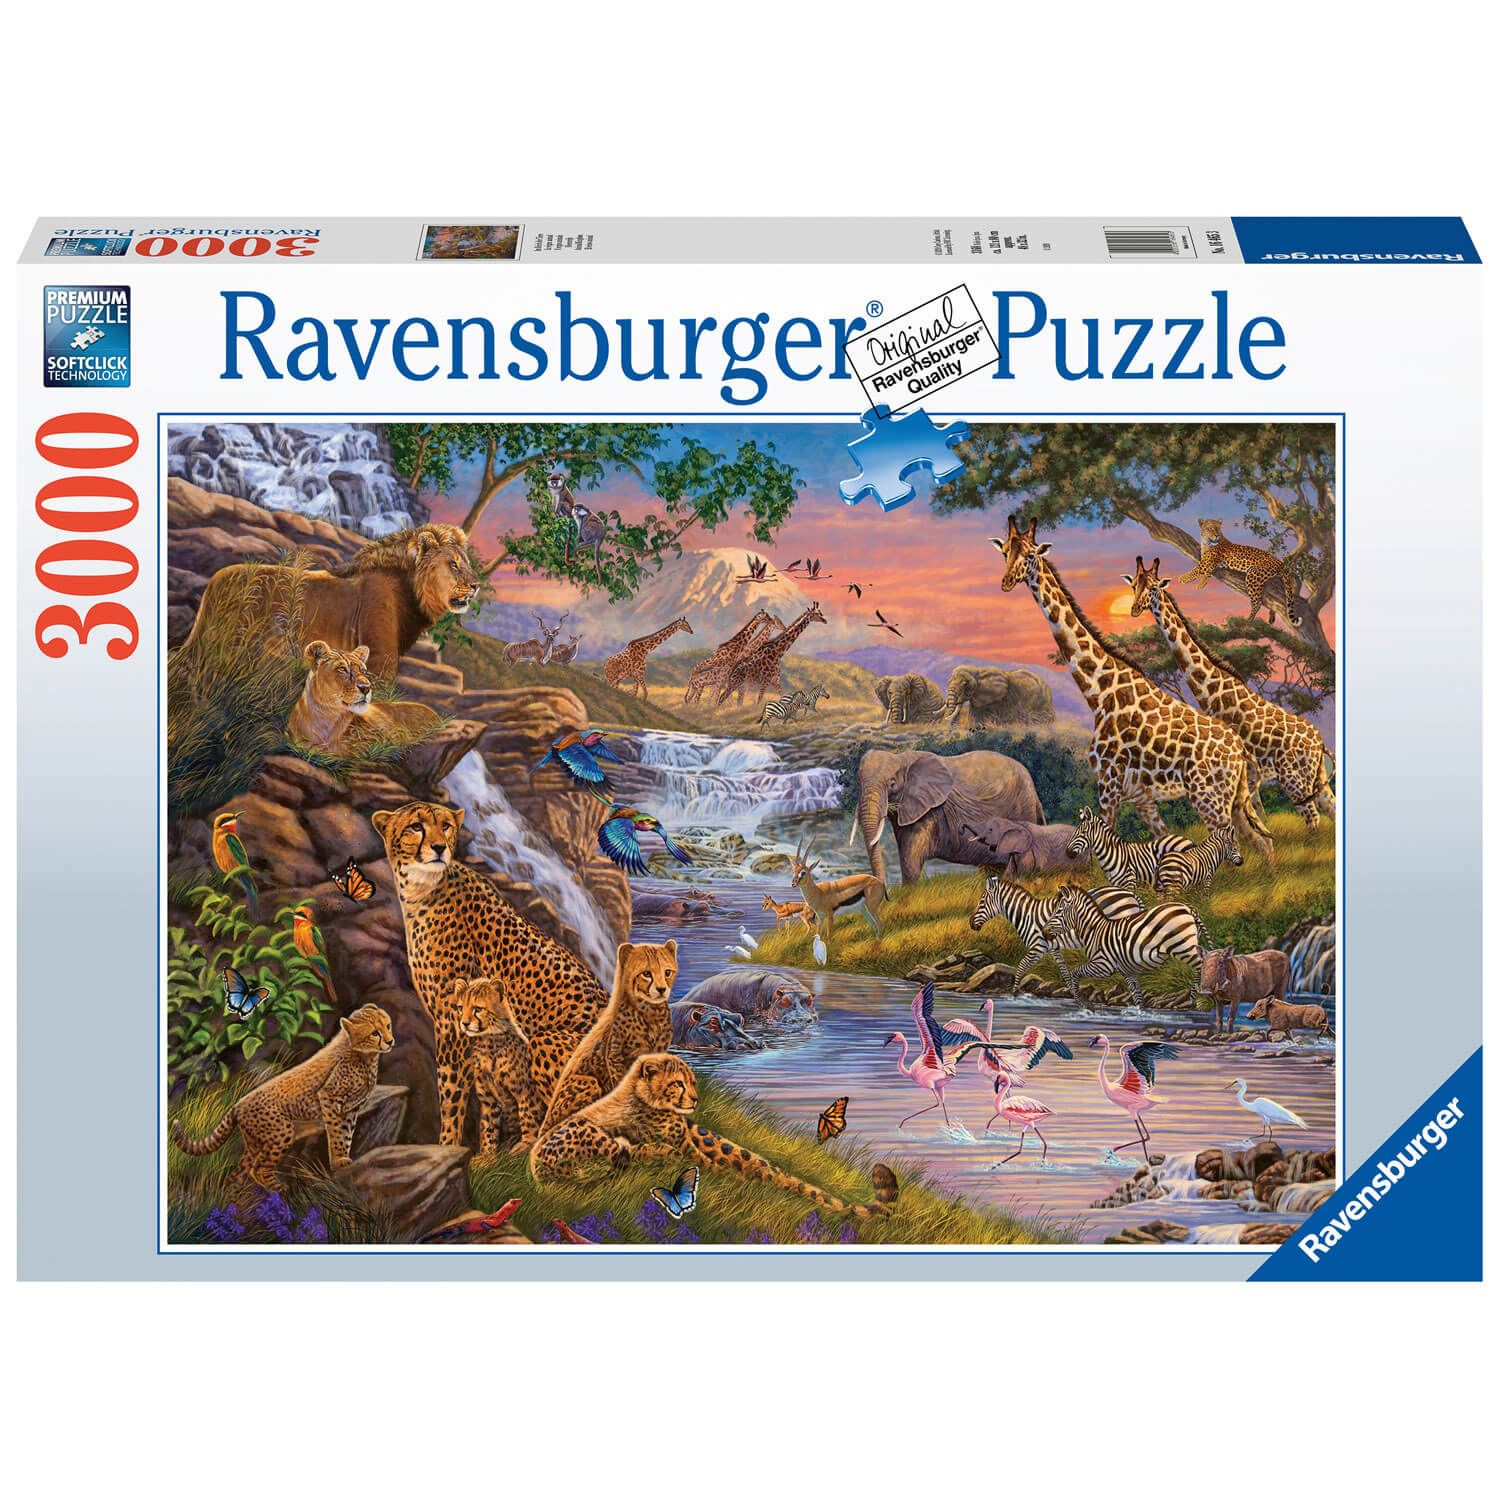 Tapis de puzzle xxl de 1000 À 3000 pieces, puzzle